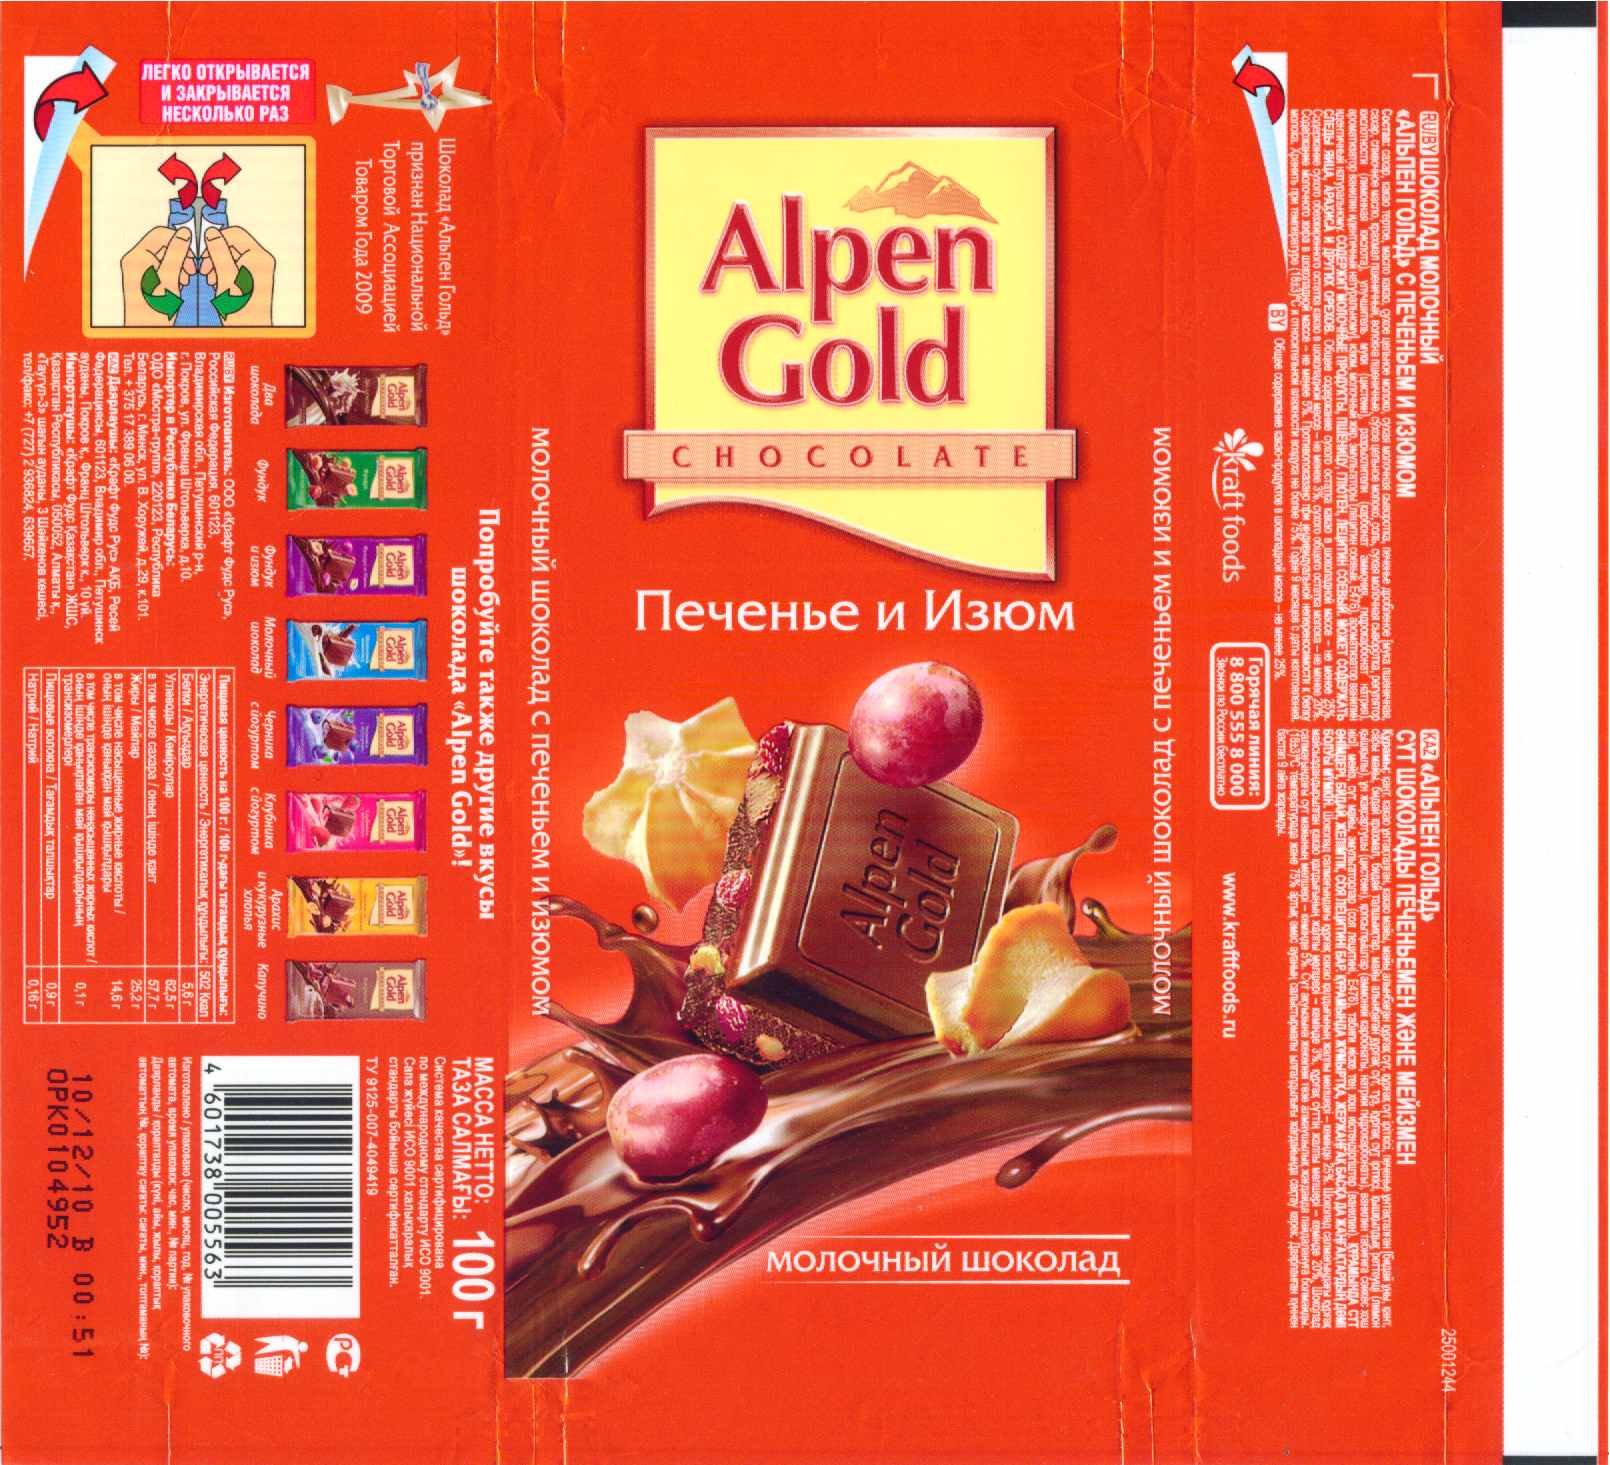 Плитка шоколада альпен гольд. Шоколад Альпен Гольд. Коробка шоколада Альпен Гольд. Обертка шоколадки Альпен Гольд. Шоколад Альпен Гольд в коробке.